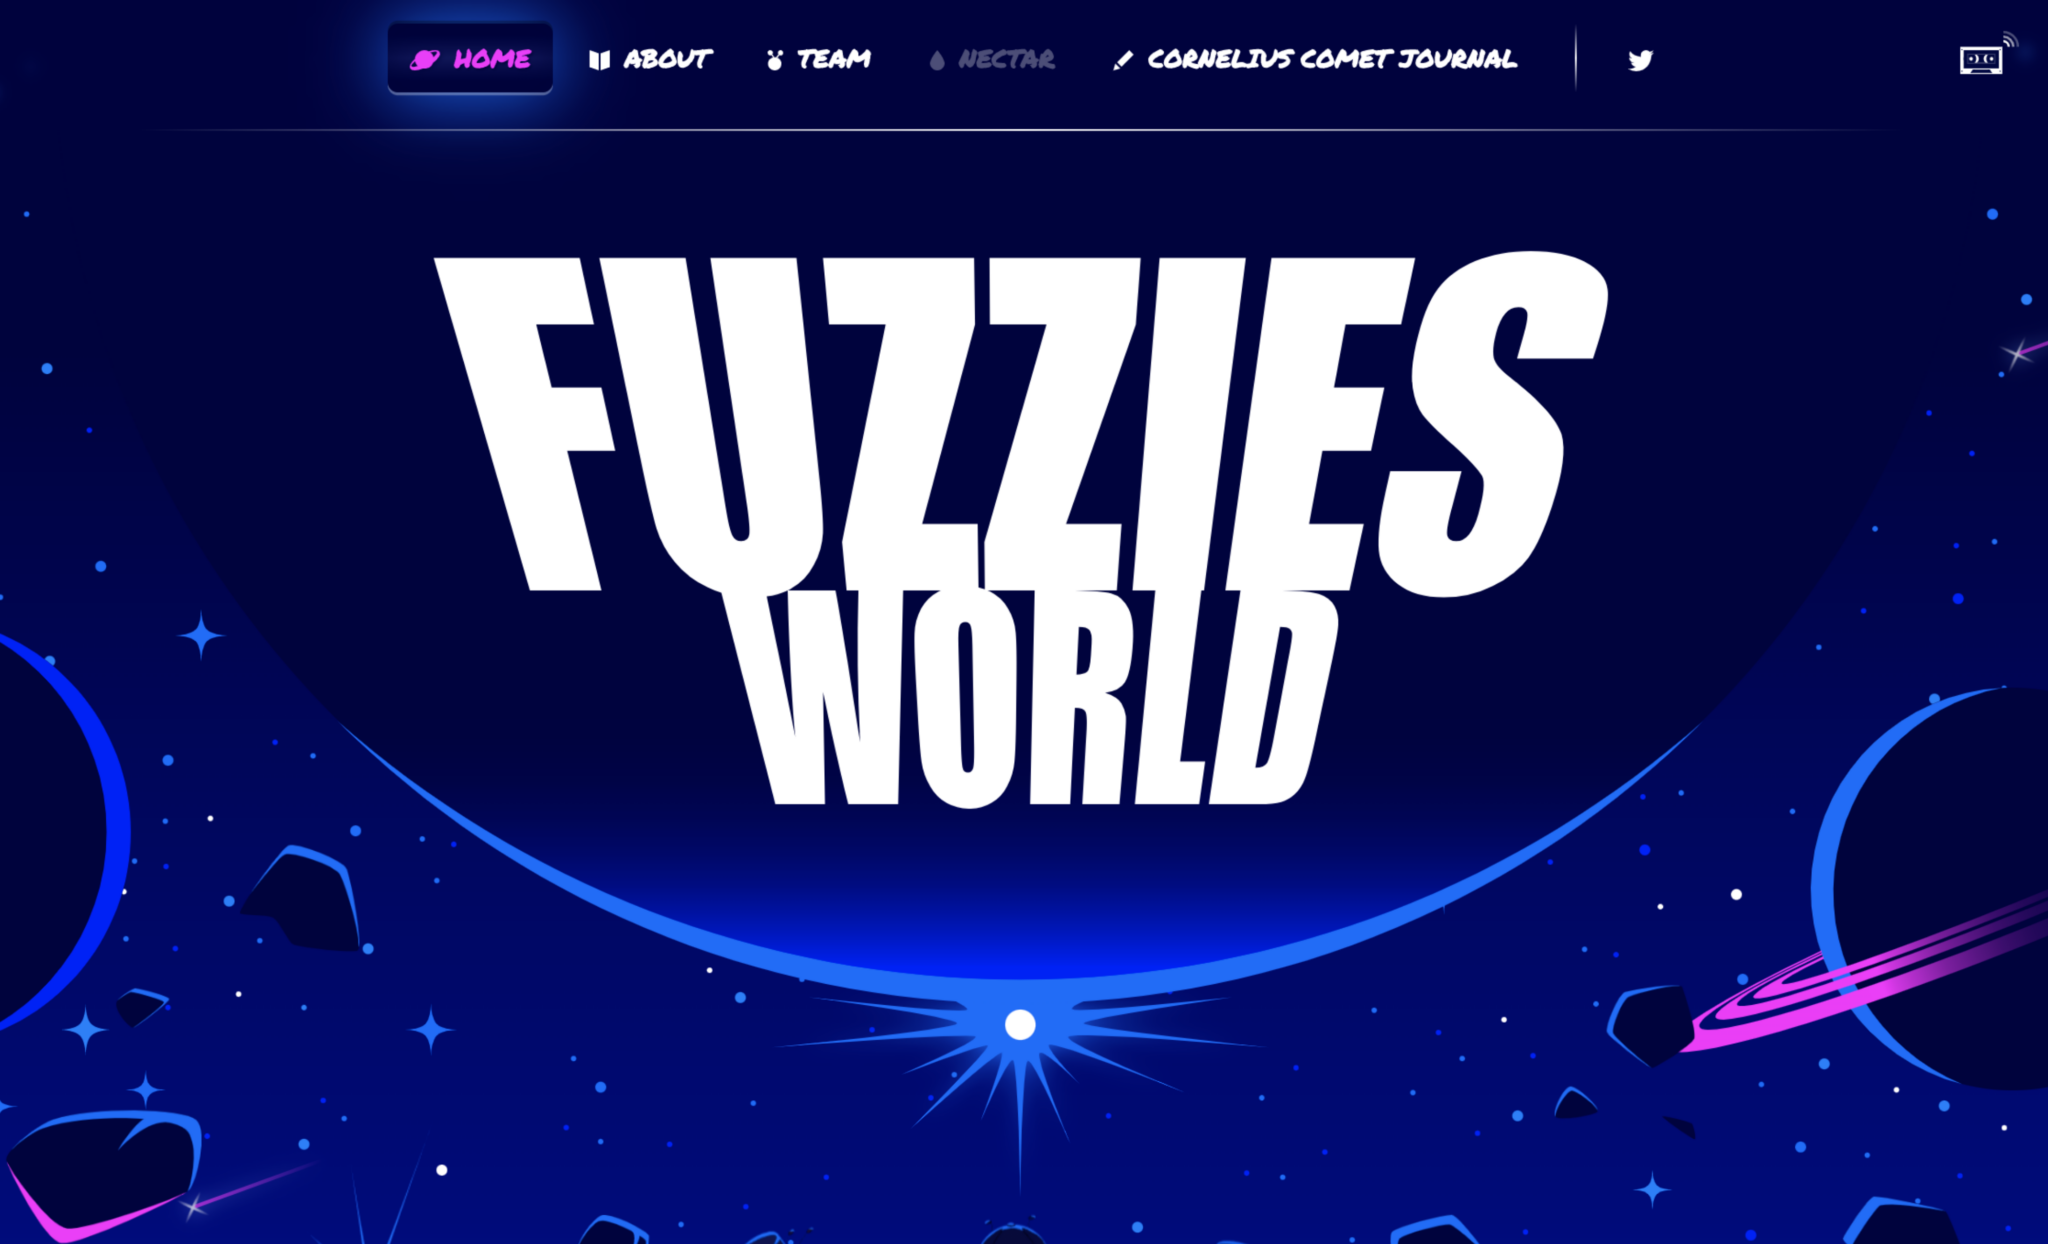 Fuzzies World